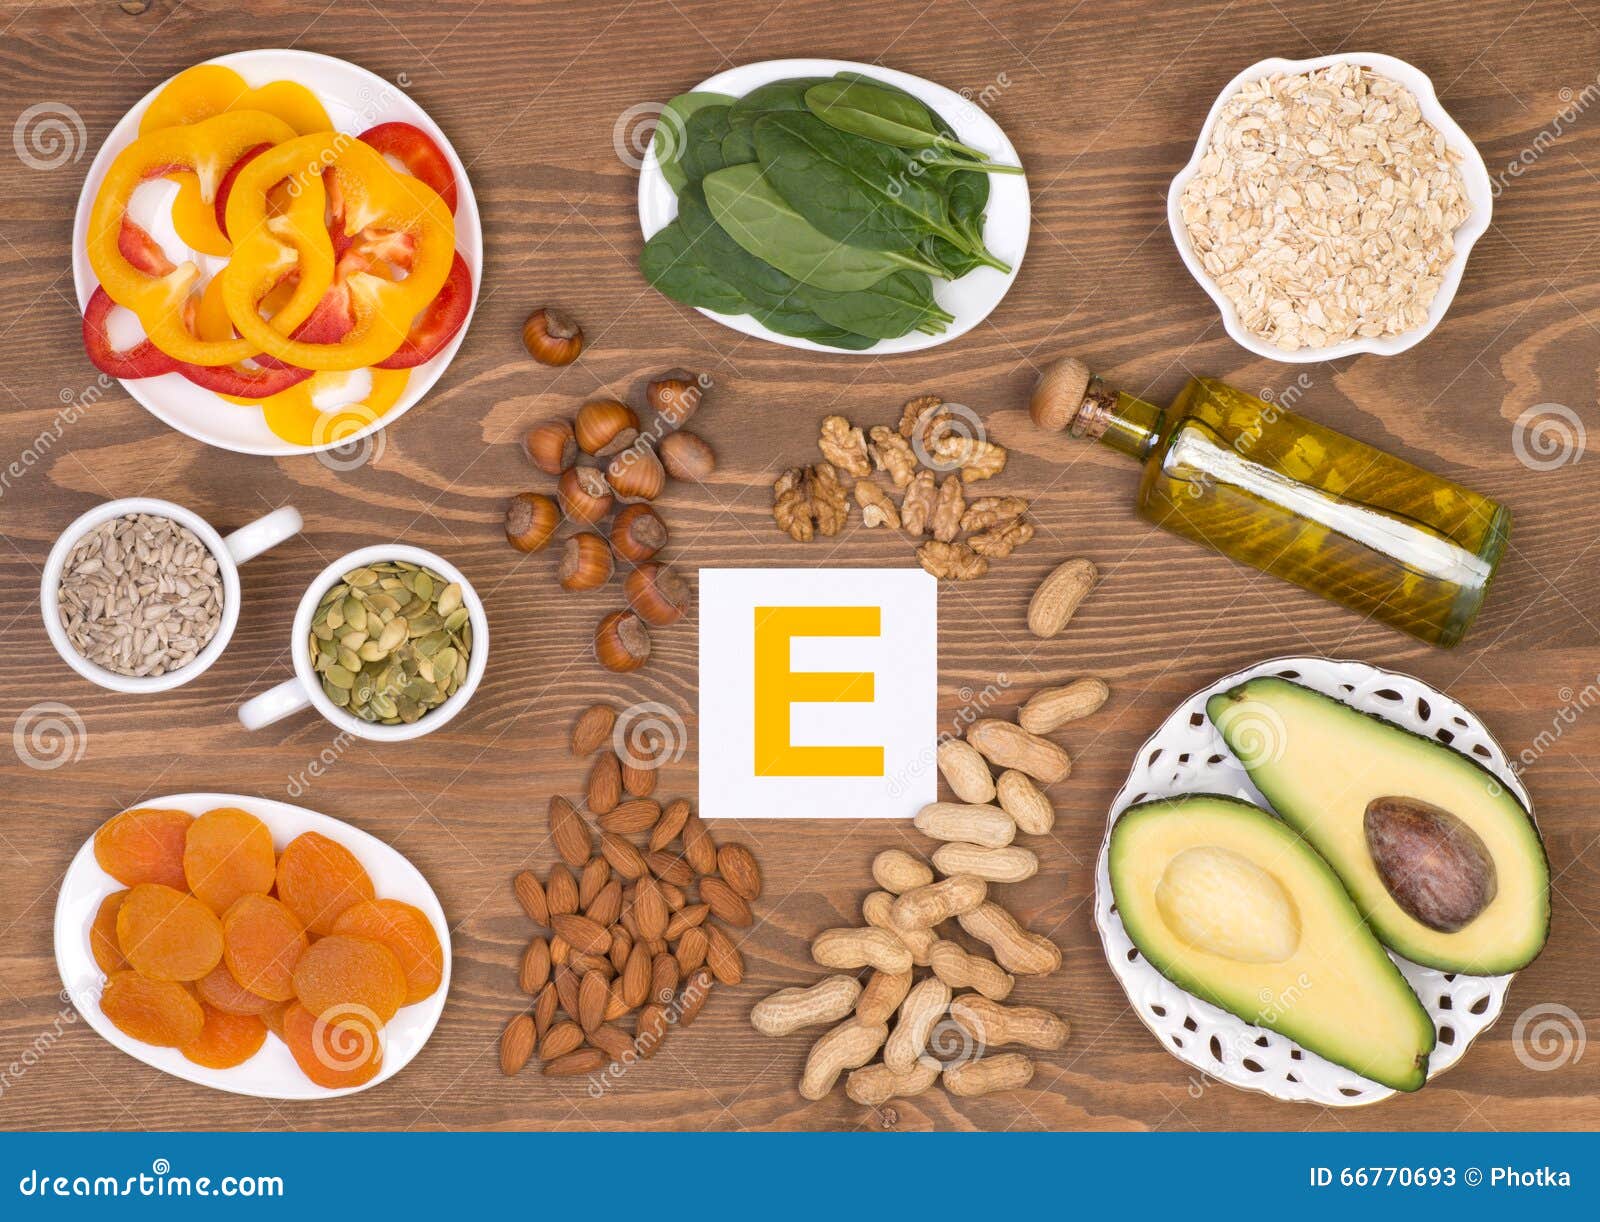 维生素E的食物来源. 维生素E的各种各样的食物来源